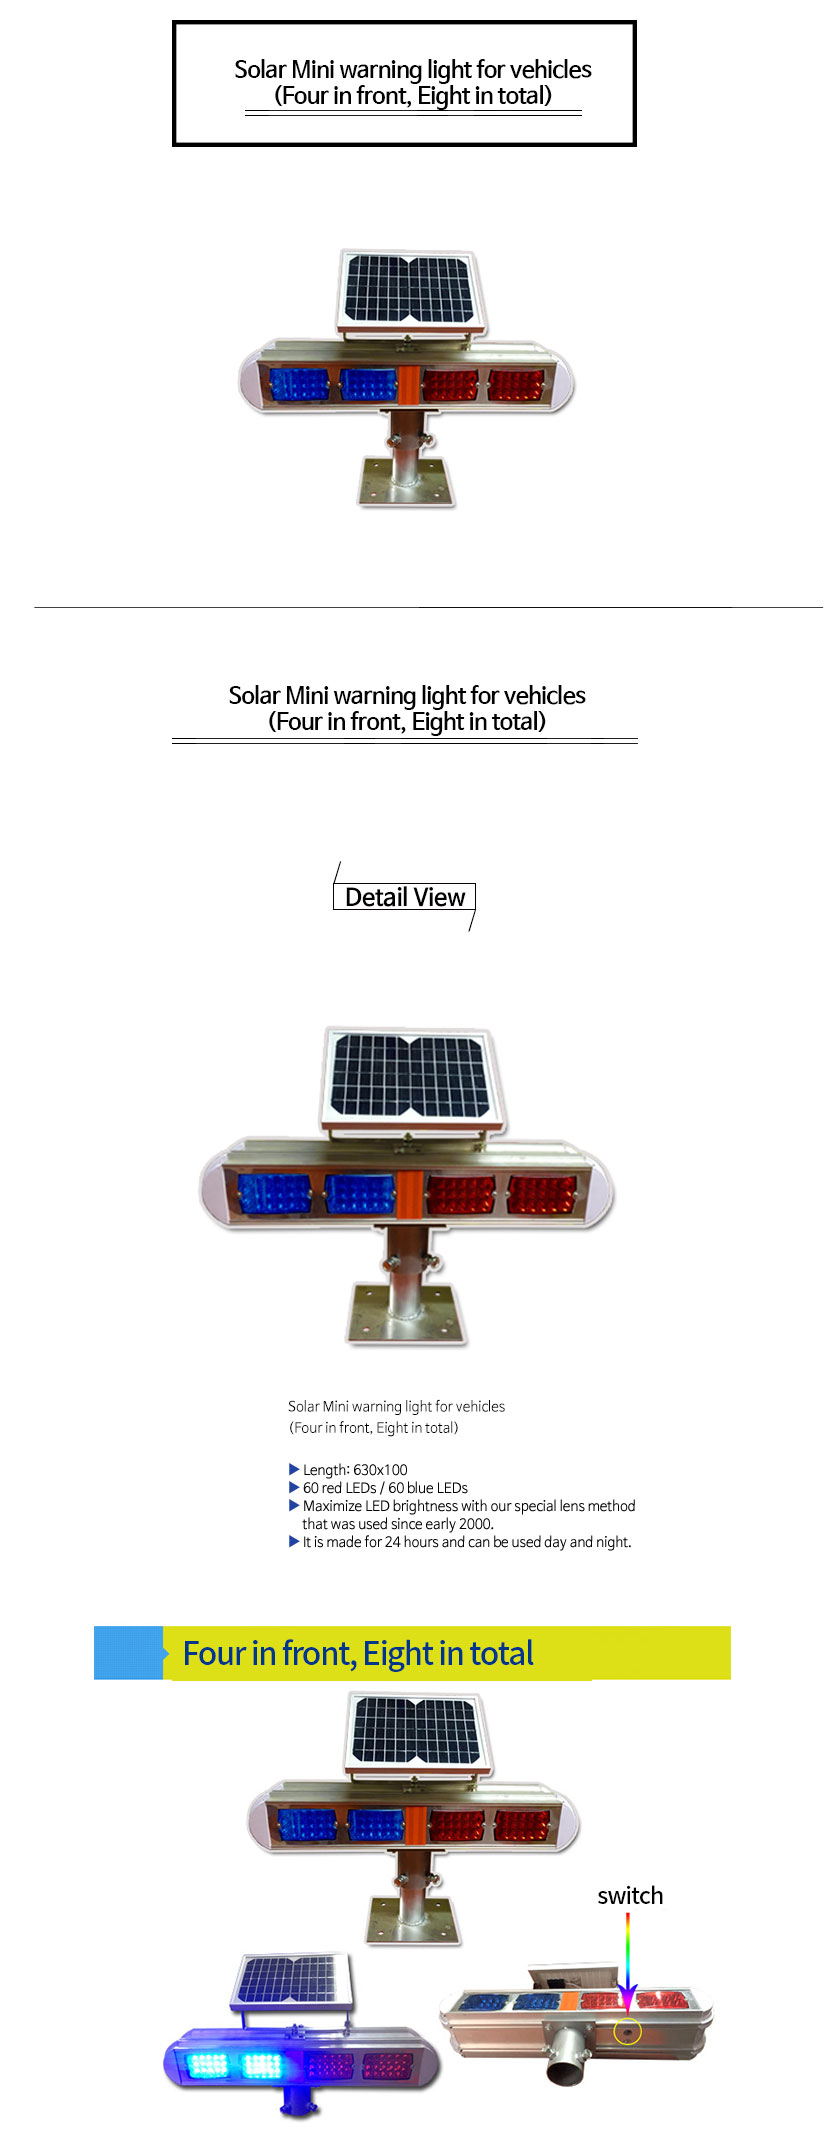 쏠라-미니-장방형경광등(전4,양8구)Solar-Mini-warning-light-for-vehicles-(four-in-front,-Eight-in-total).jpg